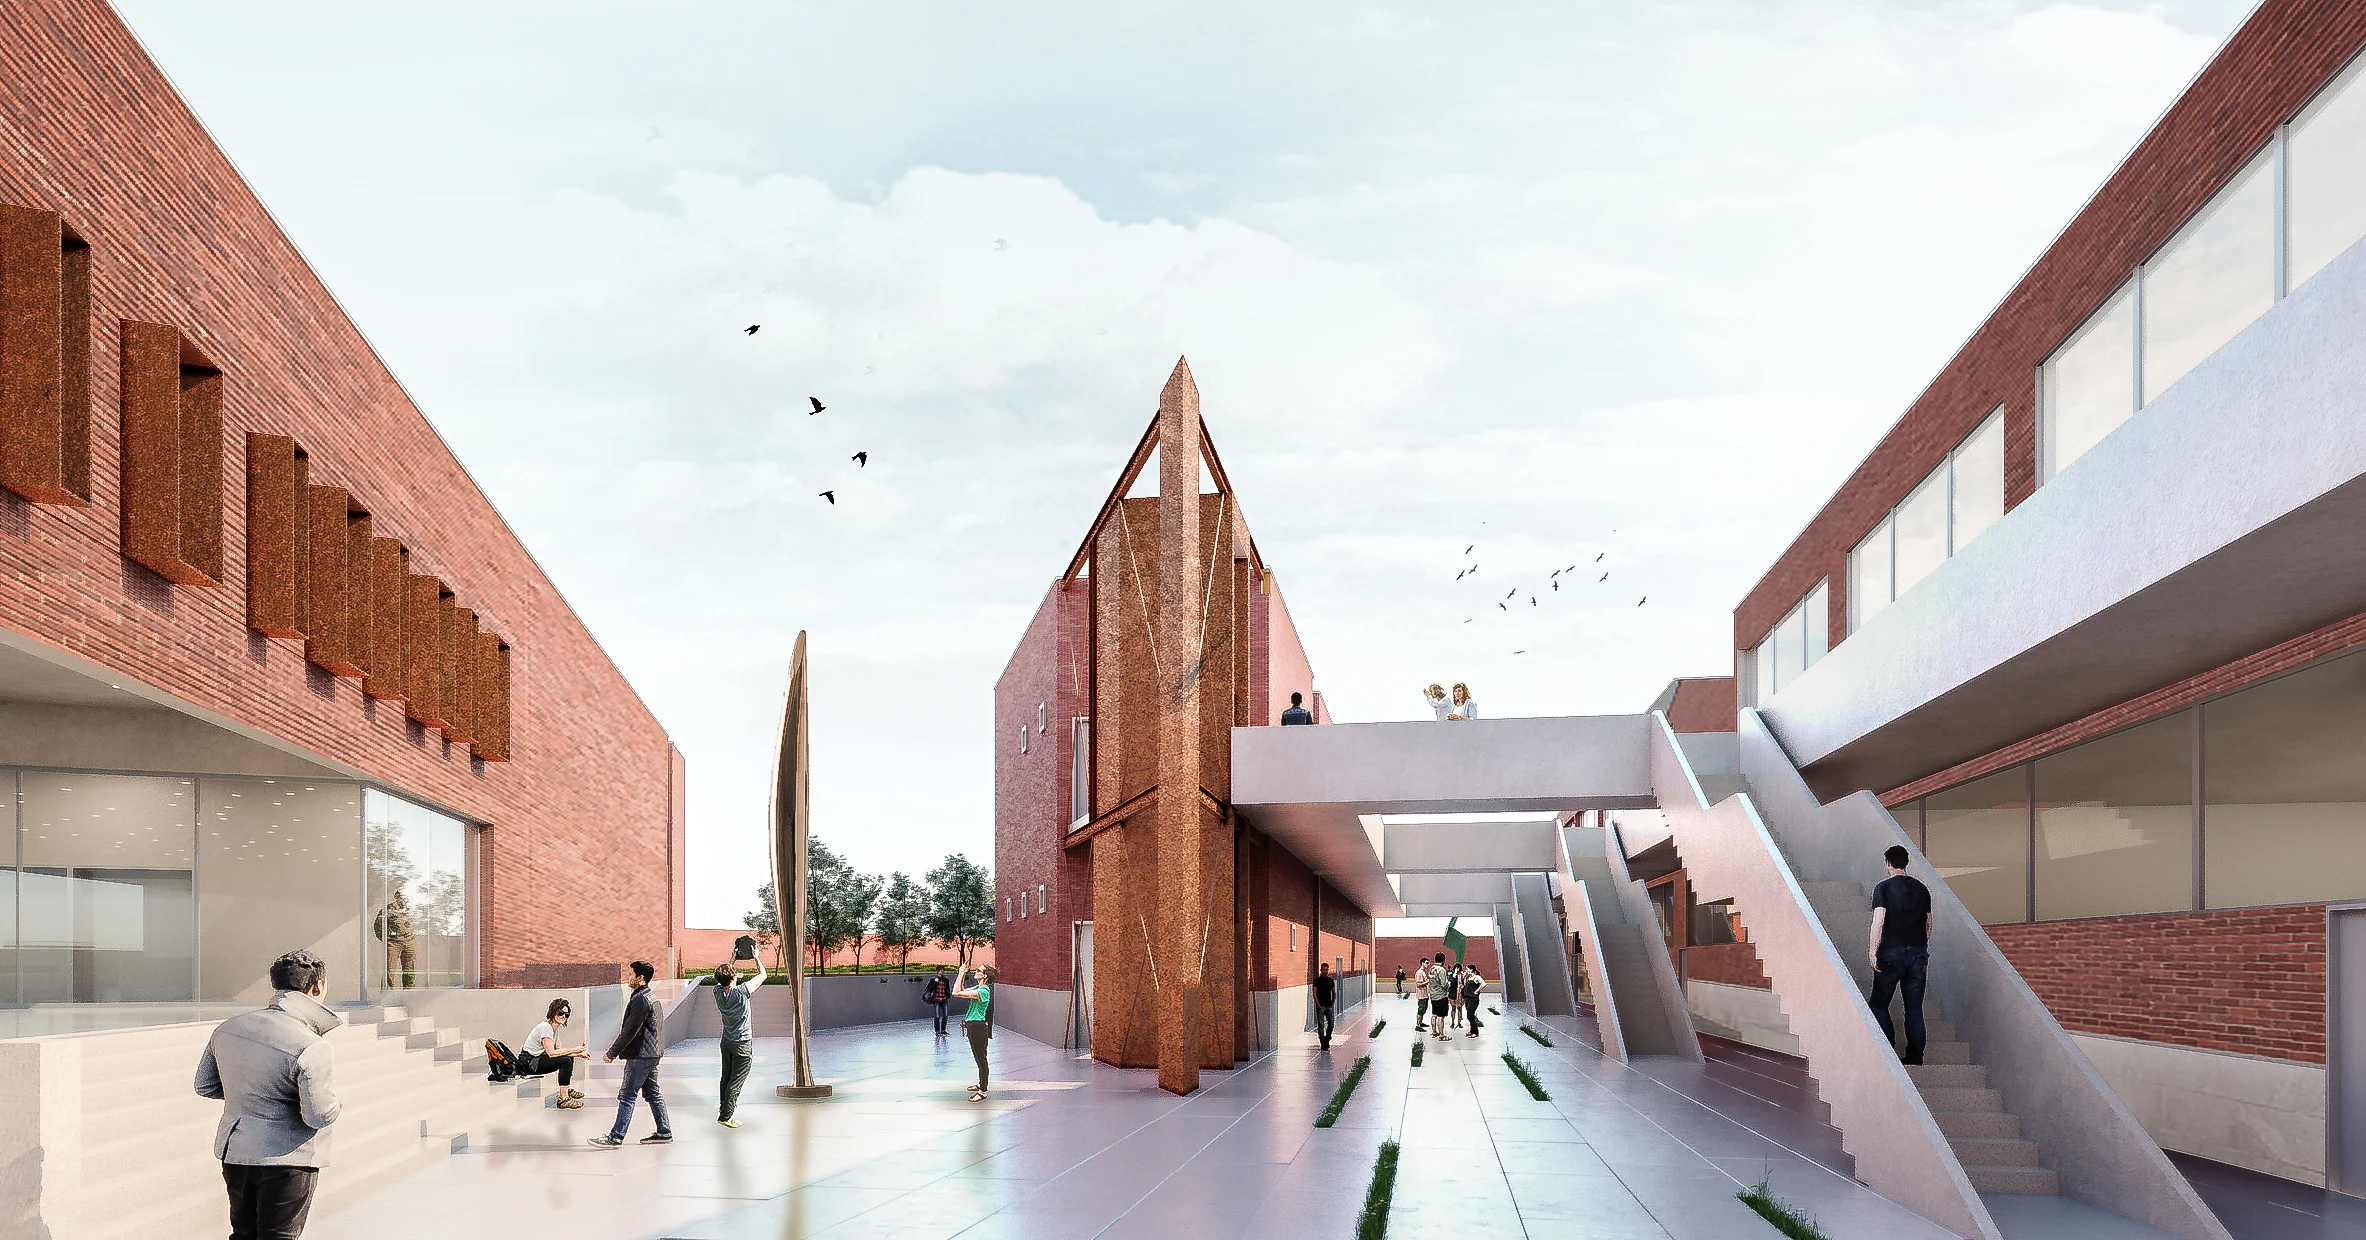 La 9ème édition du Forum international d'architecture se déroulera entre avril et fin octobre prochain dans la Cité ocre, à l’initiative de l’Ecole Nationale d'Architecture de Marrakech (ENAM)